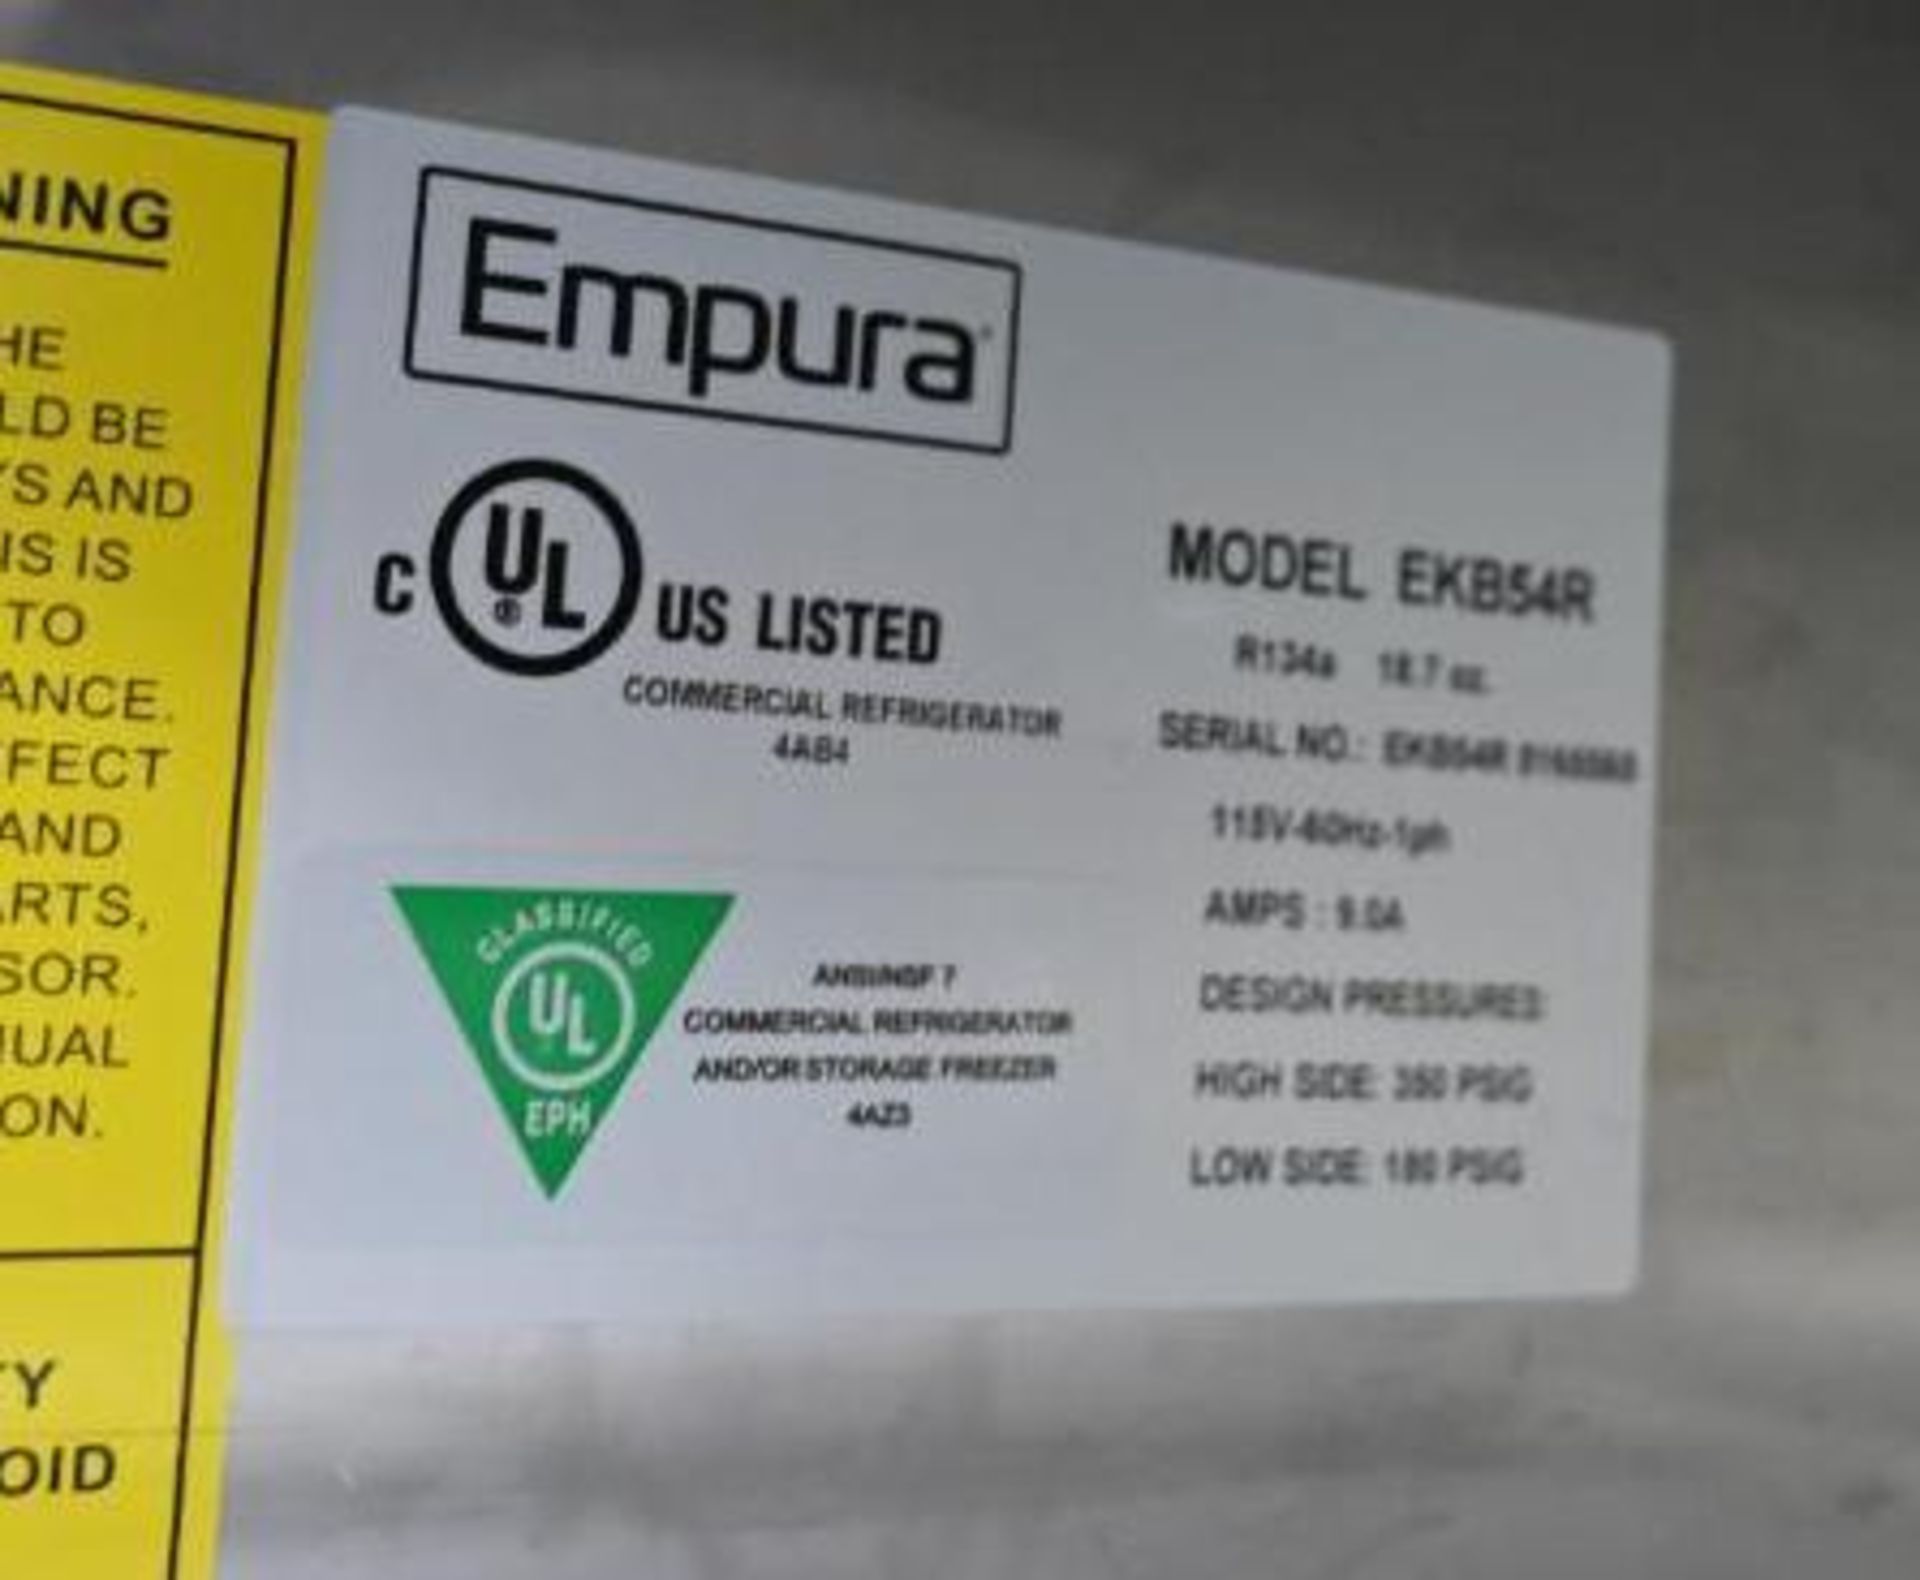 Empura model EKB54R Stainless Commercial Refrigerator - Image 3 of 14